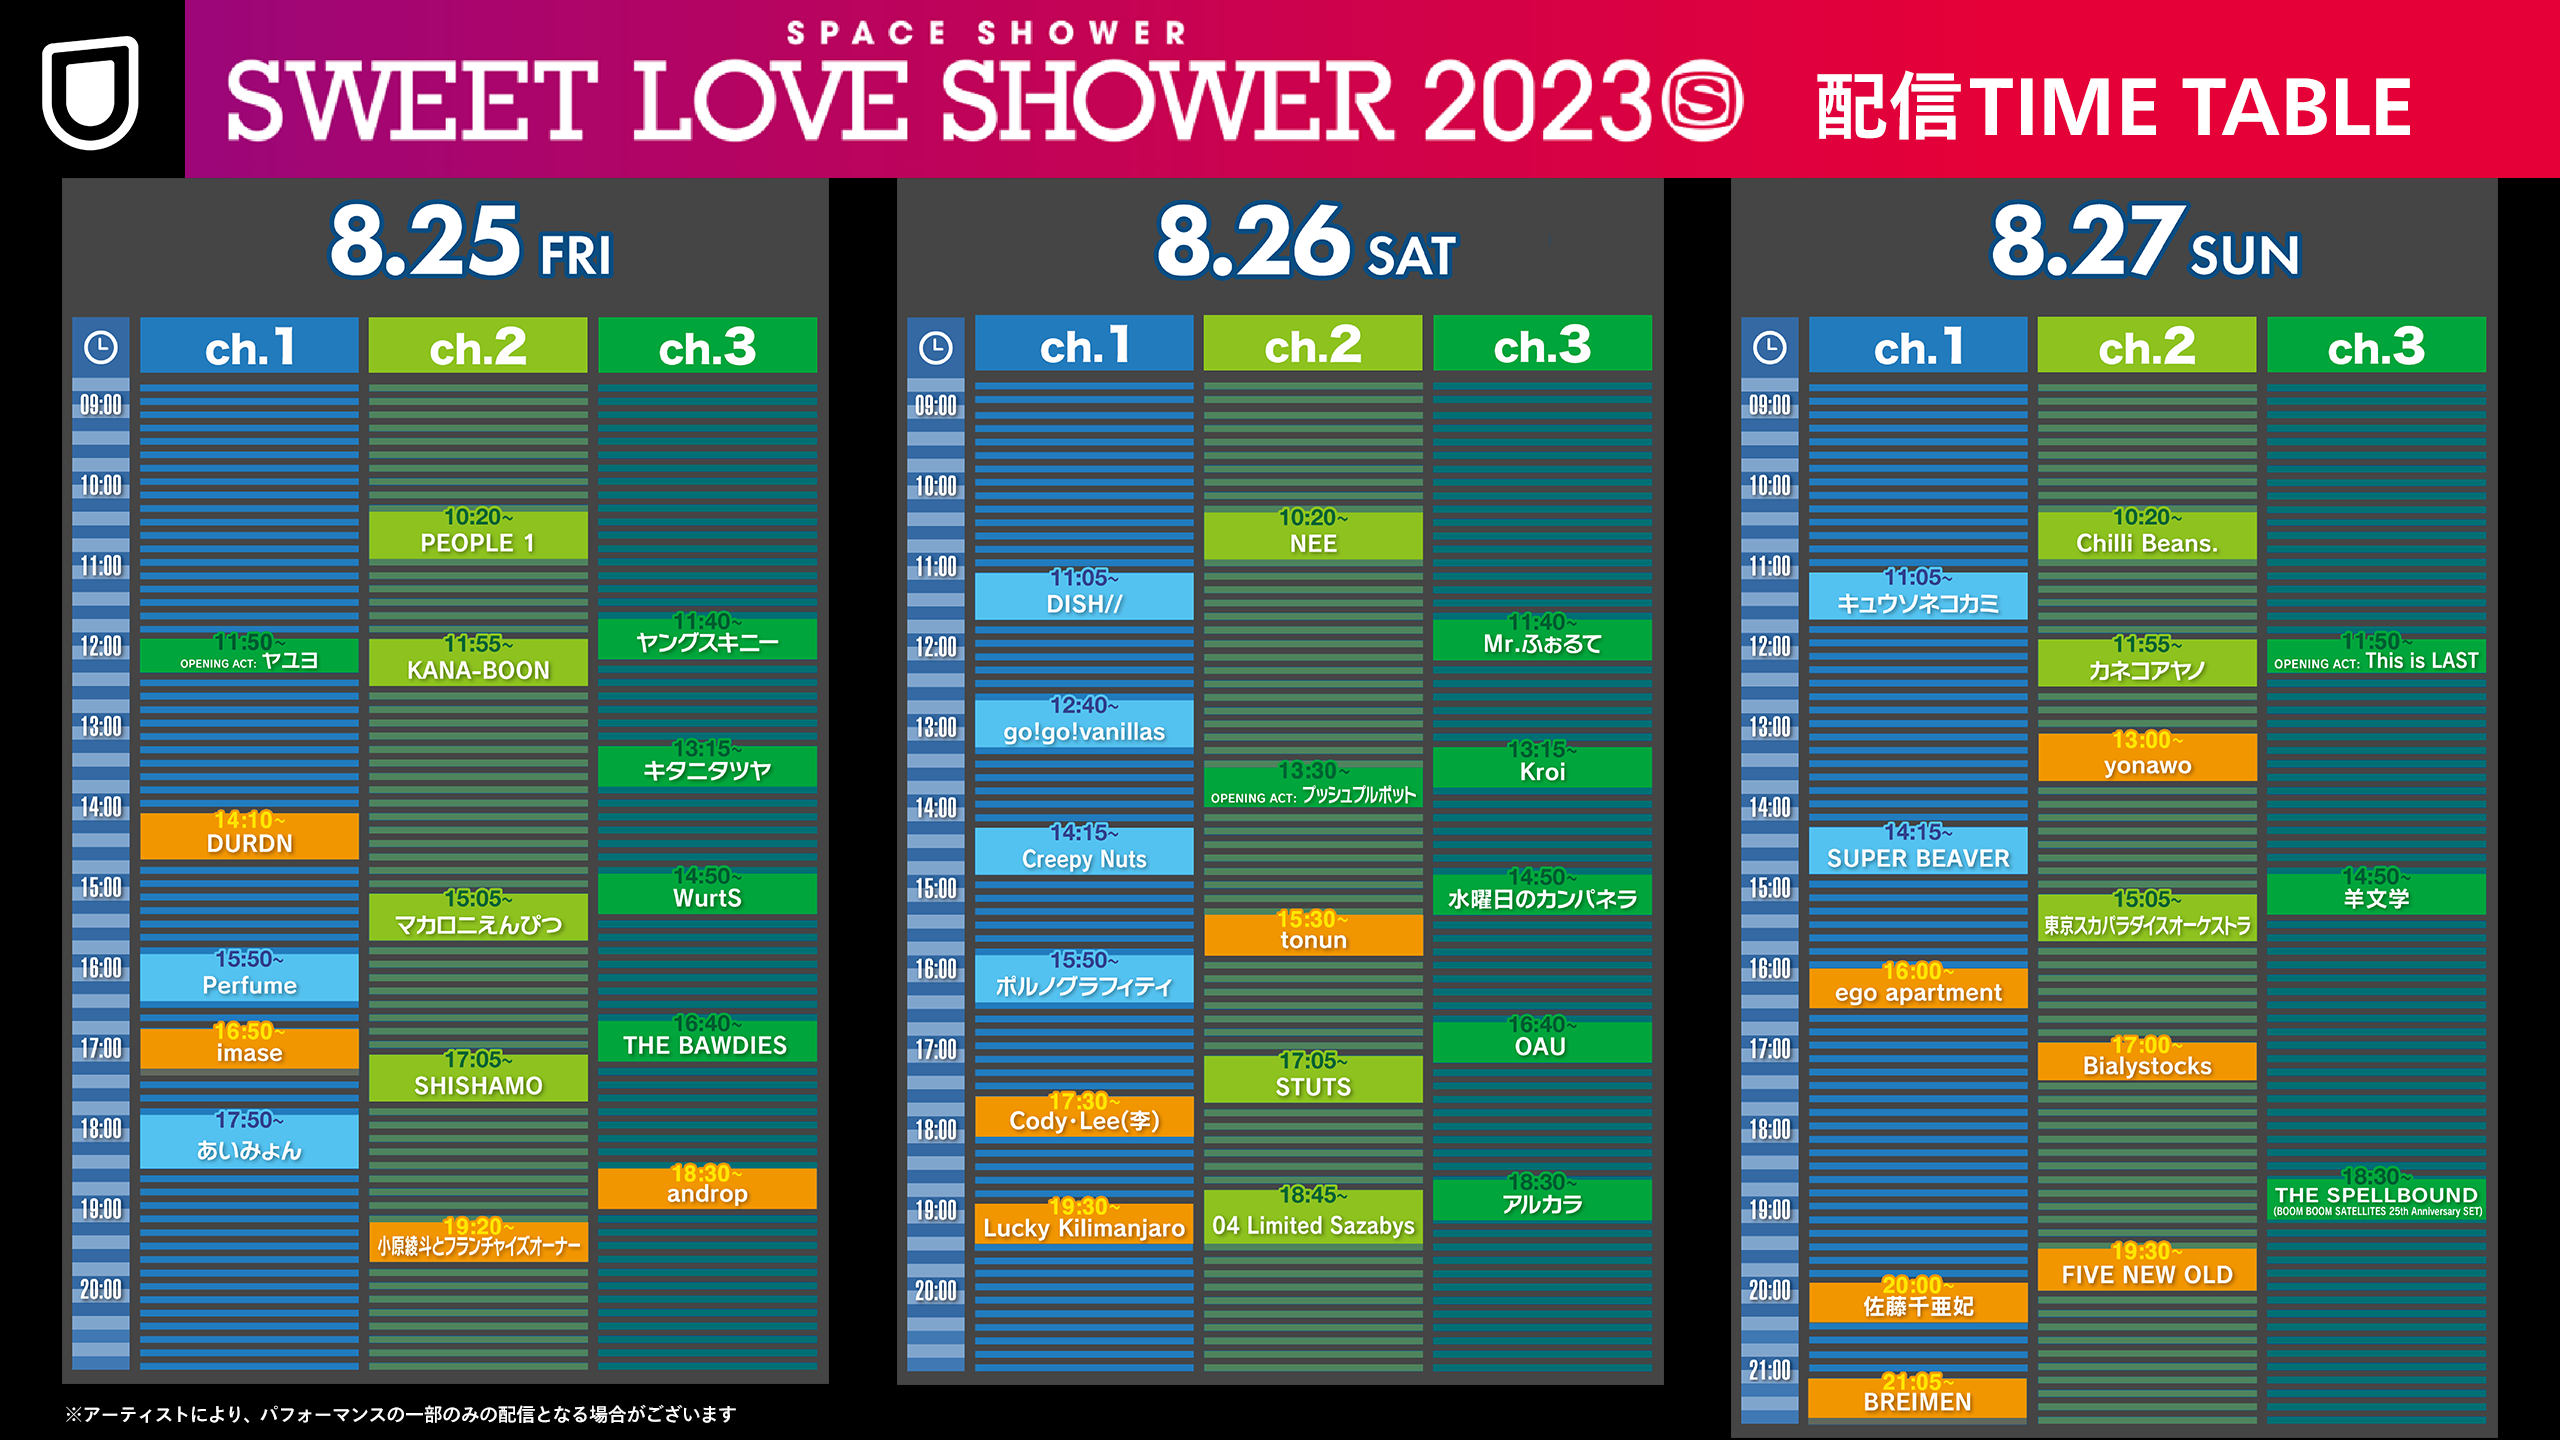 SWEET LOVE SHOWER 2023」U-NEXTにて生配信!!! 配信タイムテーブル発表